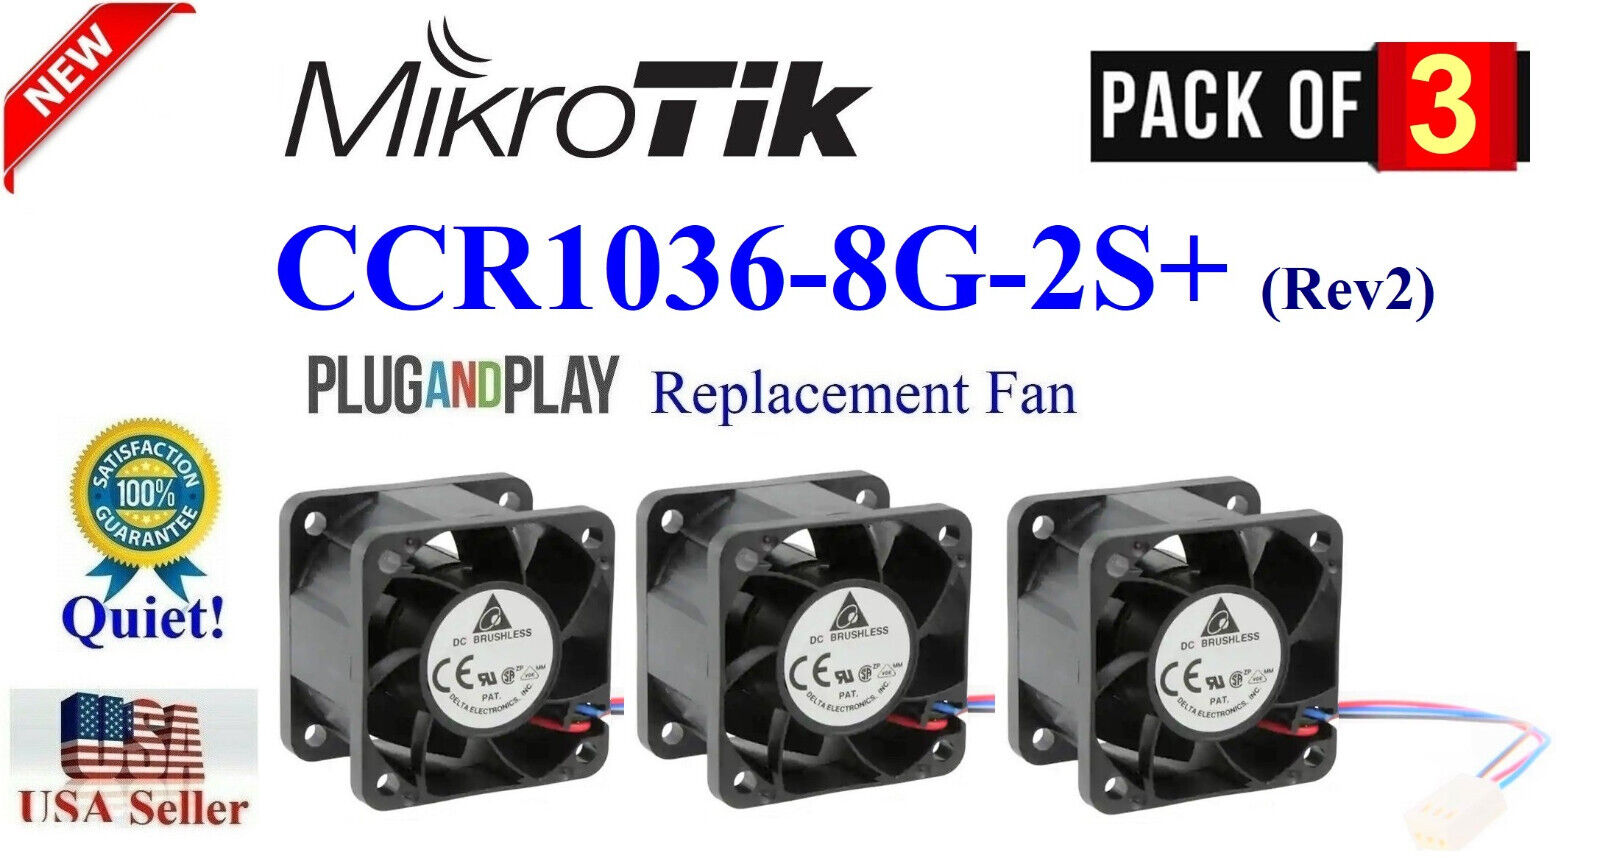 Lot 3x Quiet version replacement Fans for Mikrotik CCR1036-8G-2S+ (Rev2)